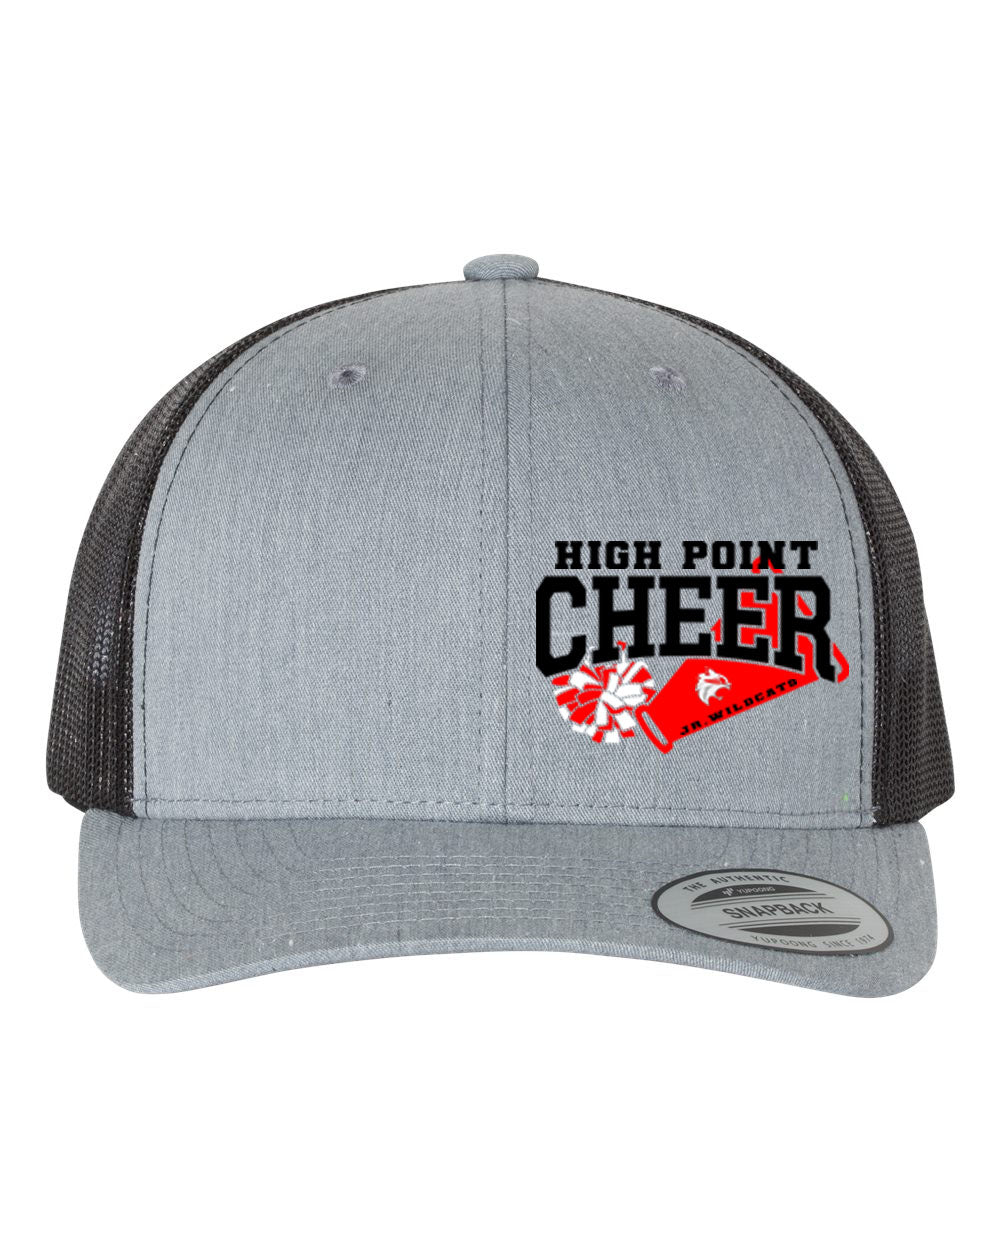 High Point Cheer Design 1 Trucker Hat